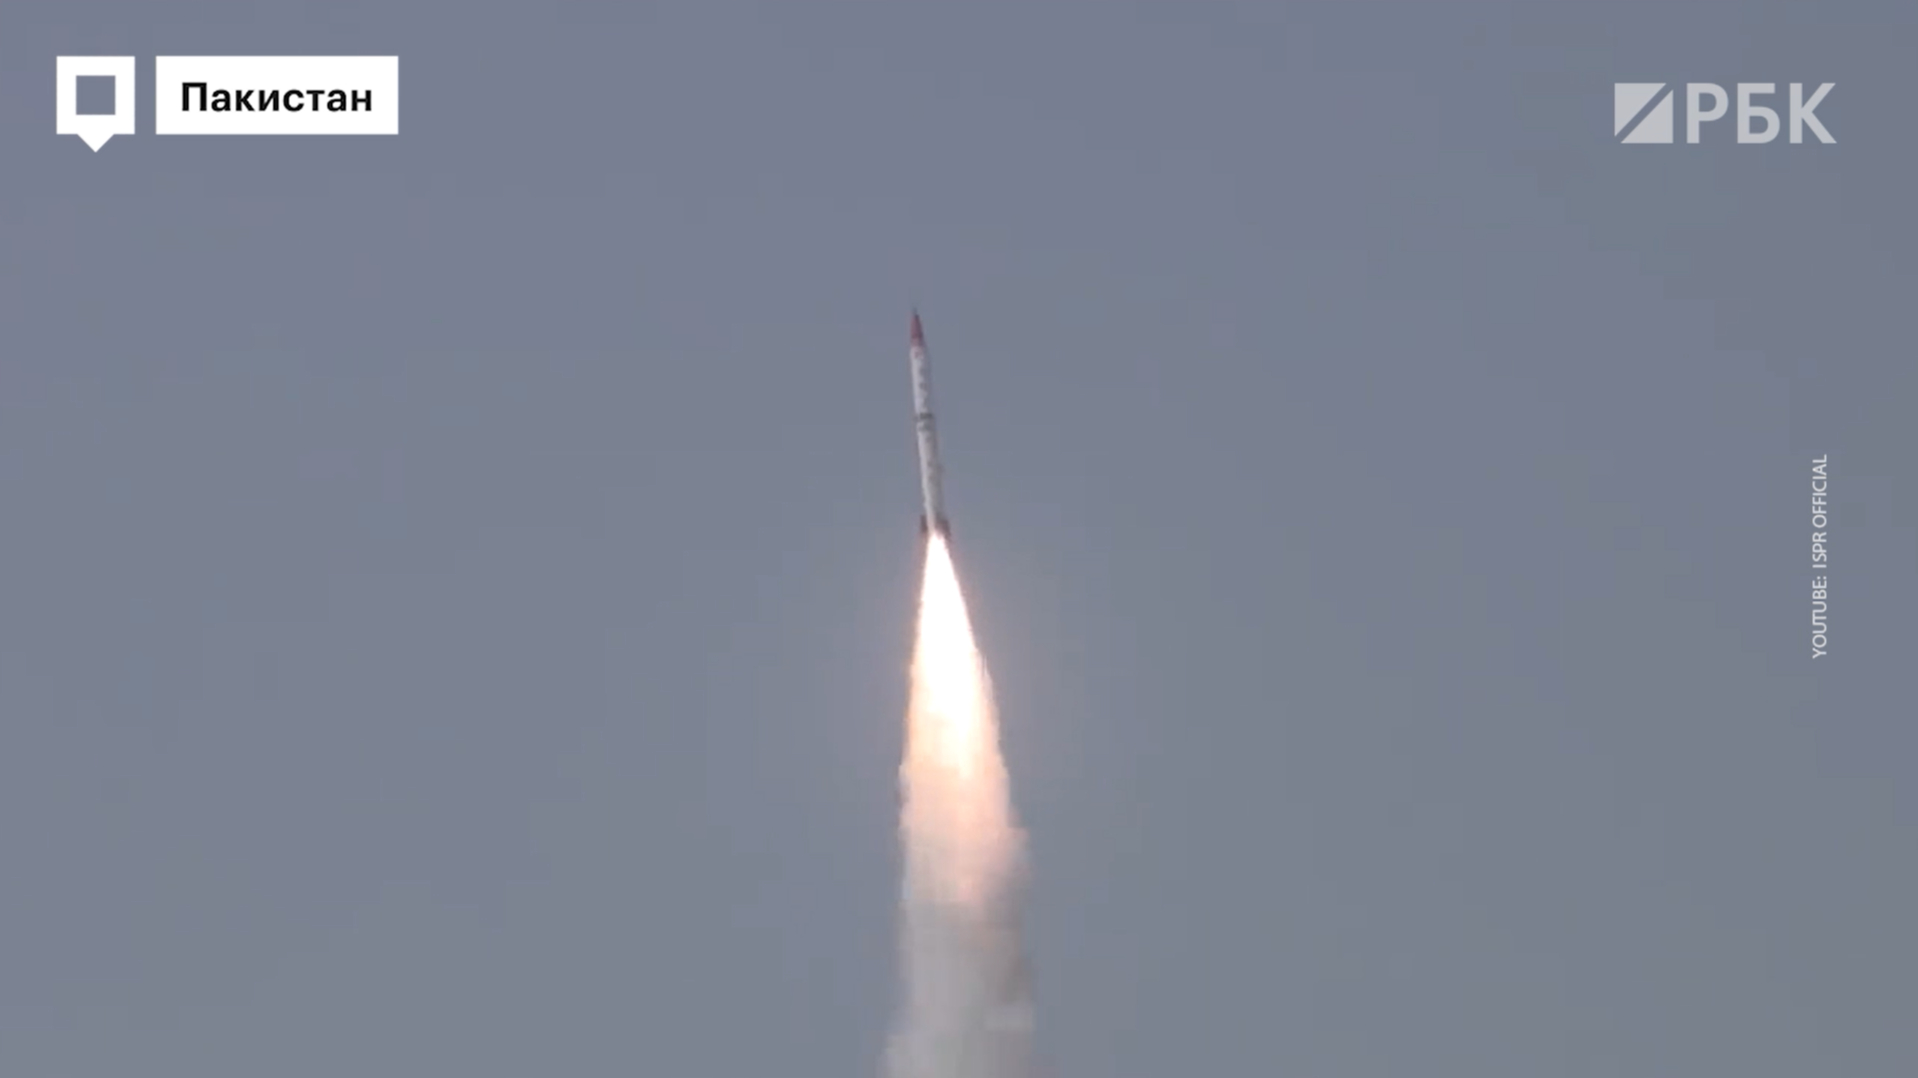 Пакистан провел испытание баллистической ракеты Shaheen-III